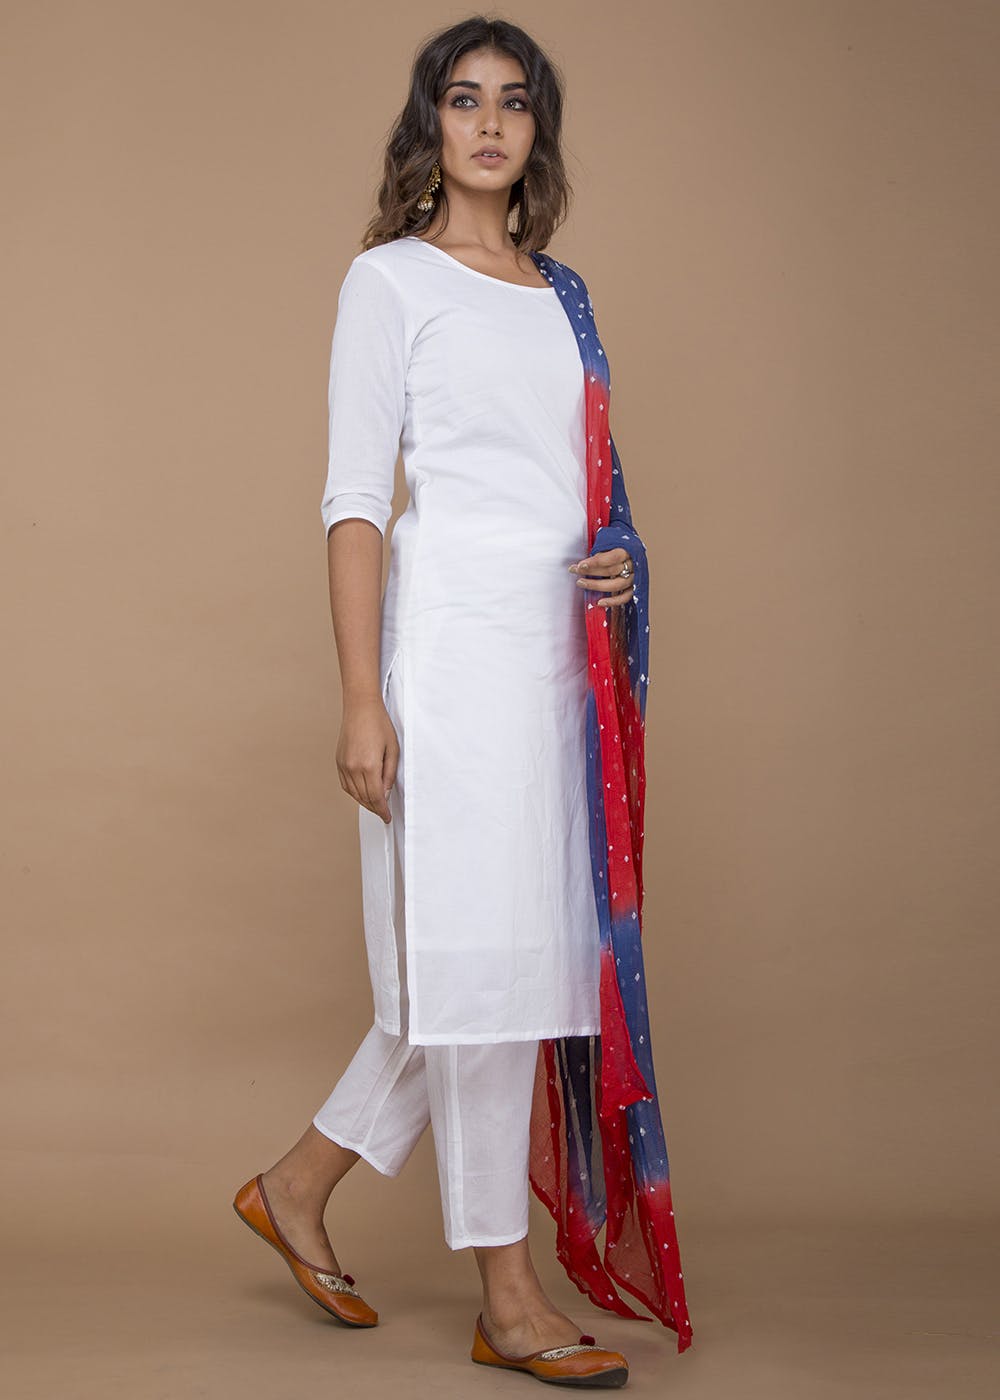 bandhani dupatta on white dress